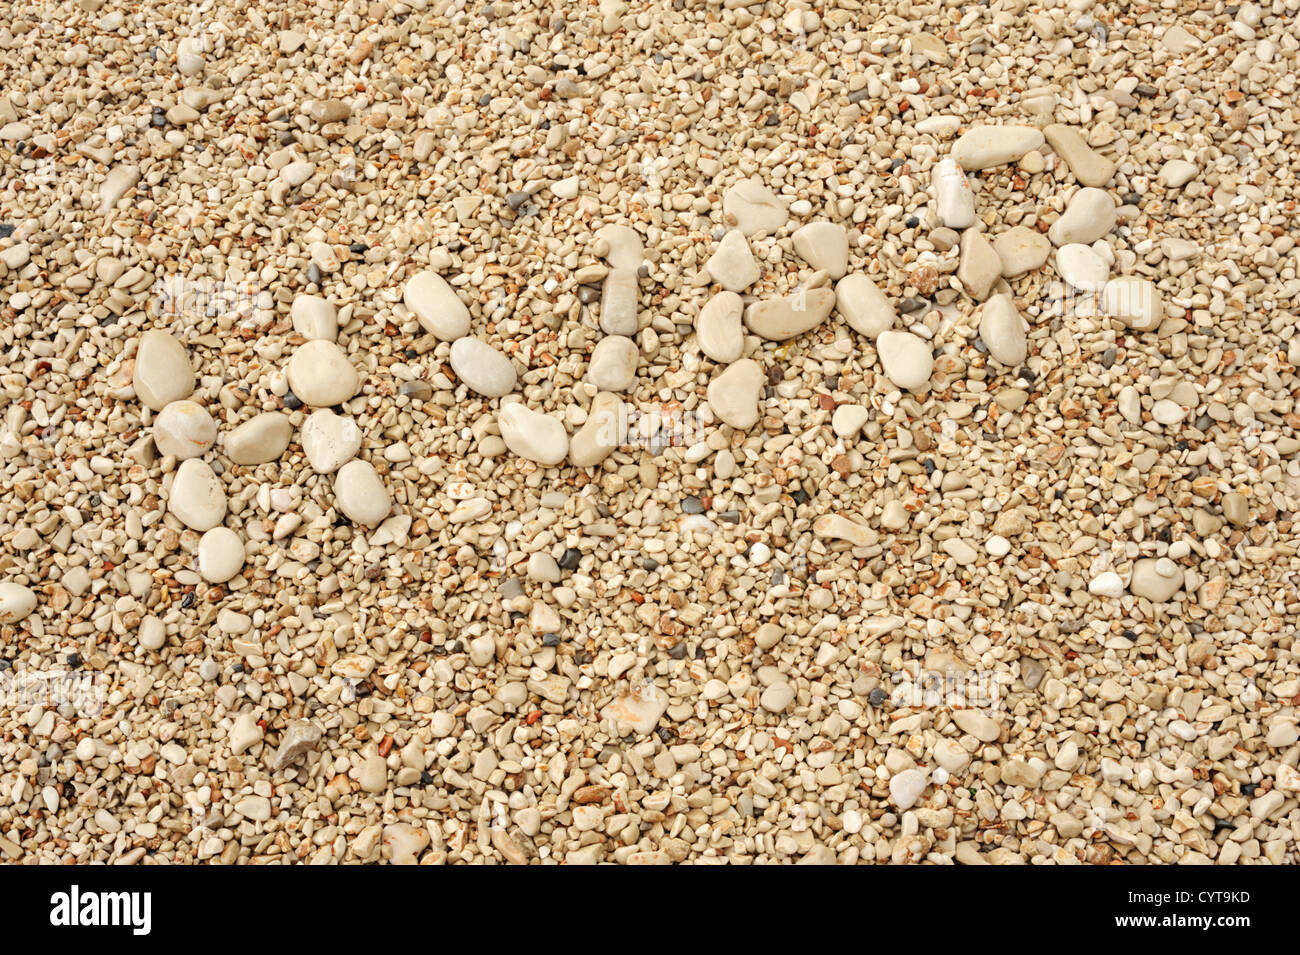 HVAR Parole faite de cailloux, image authentique d'Hvar's beach Banque D'Images